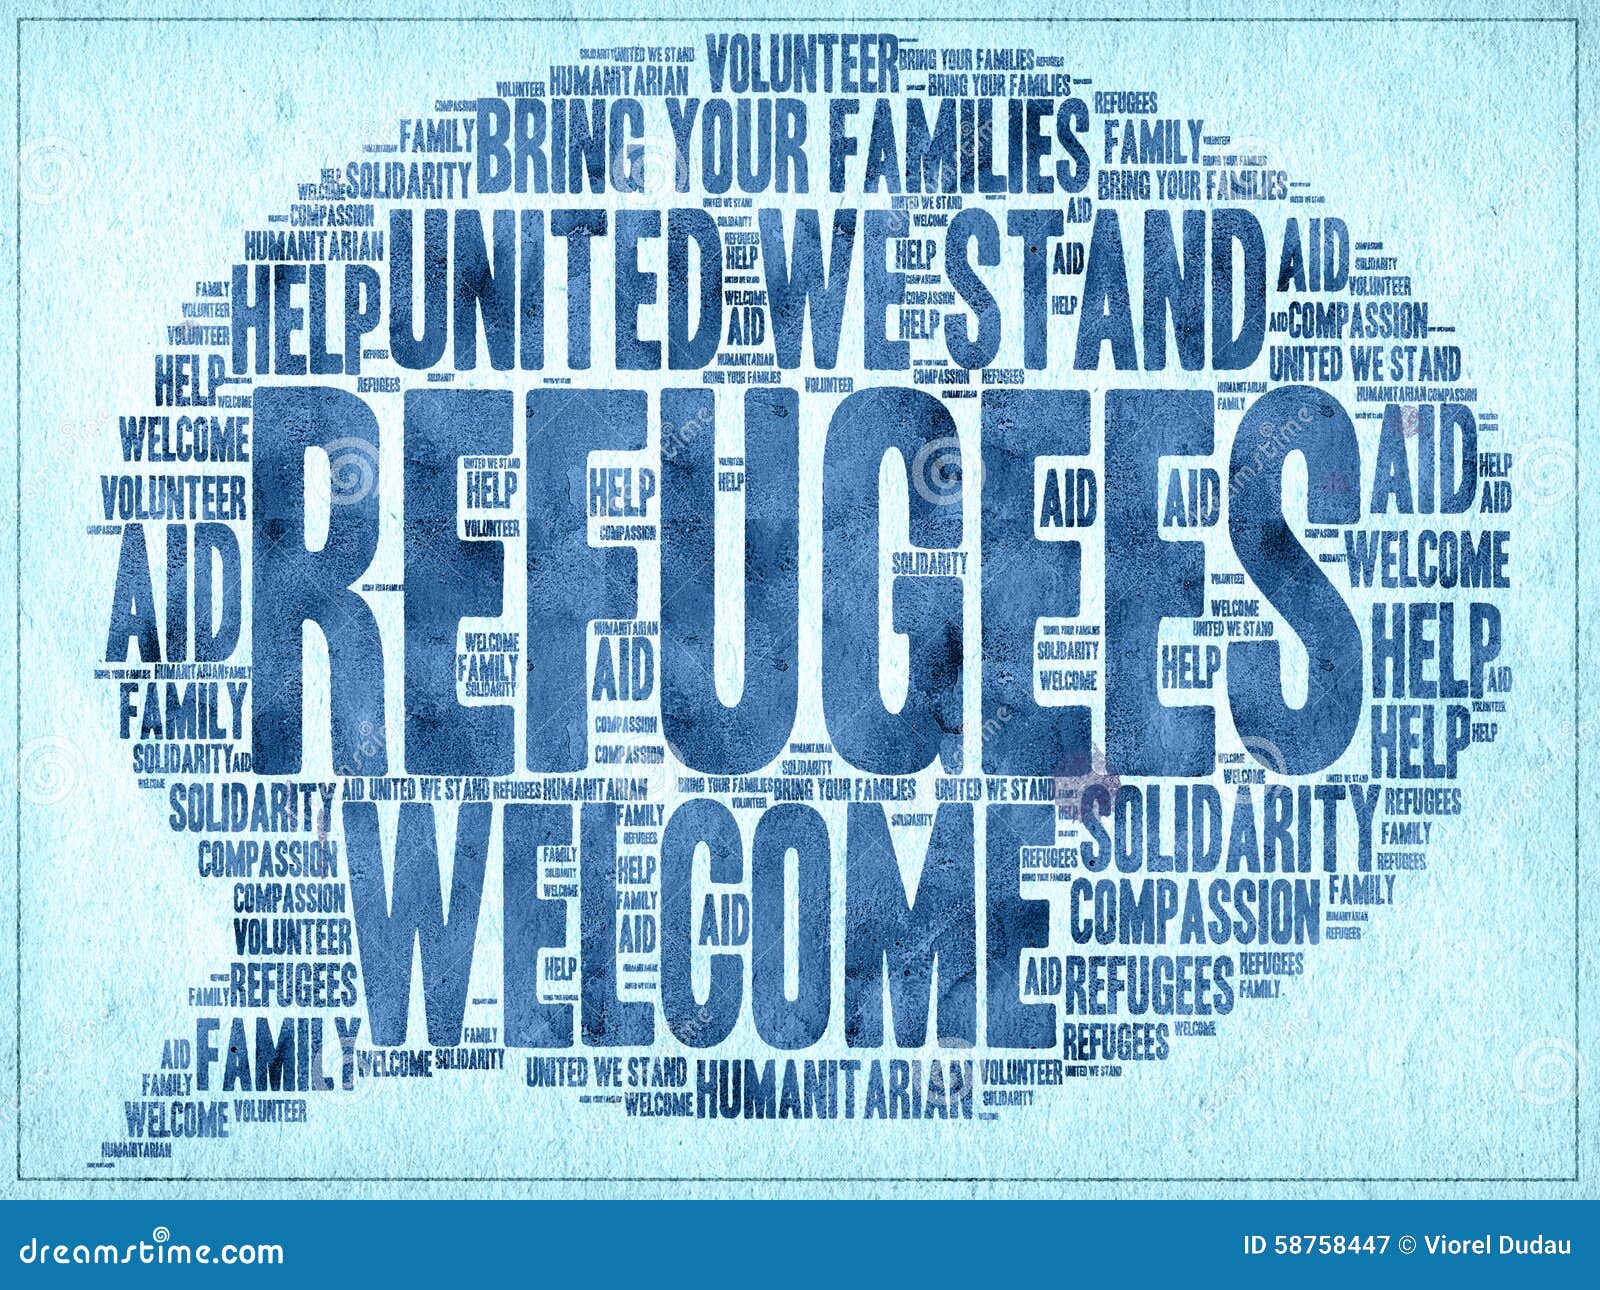 Refugees Welcome Stock 225 Refugees Welcome Stock Illustrations, Vectors Clipart - Dreamstime